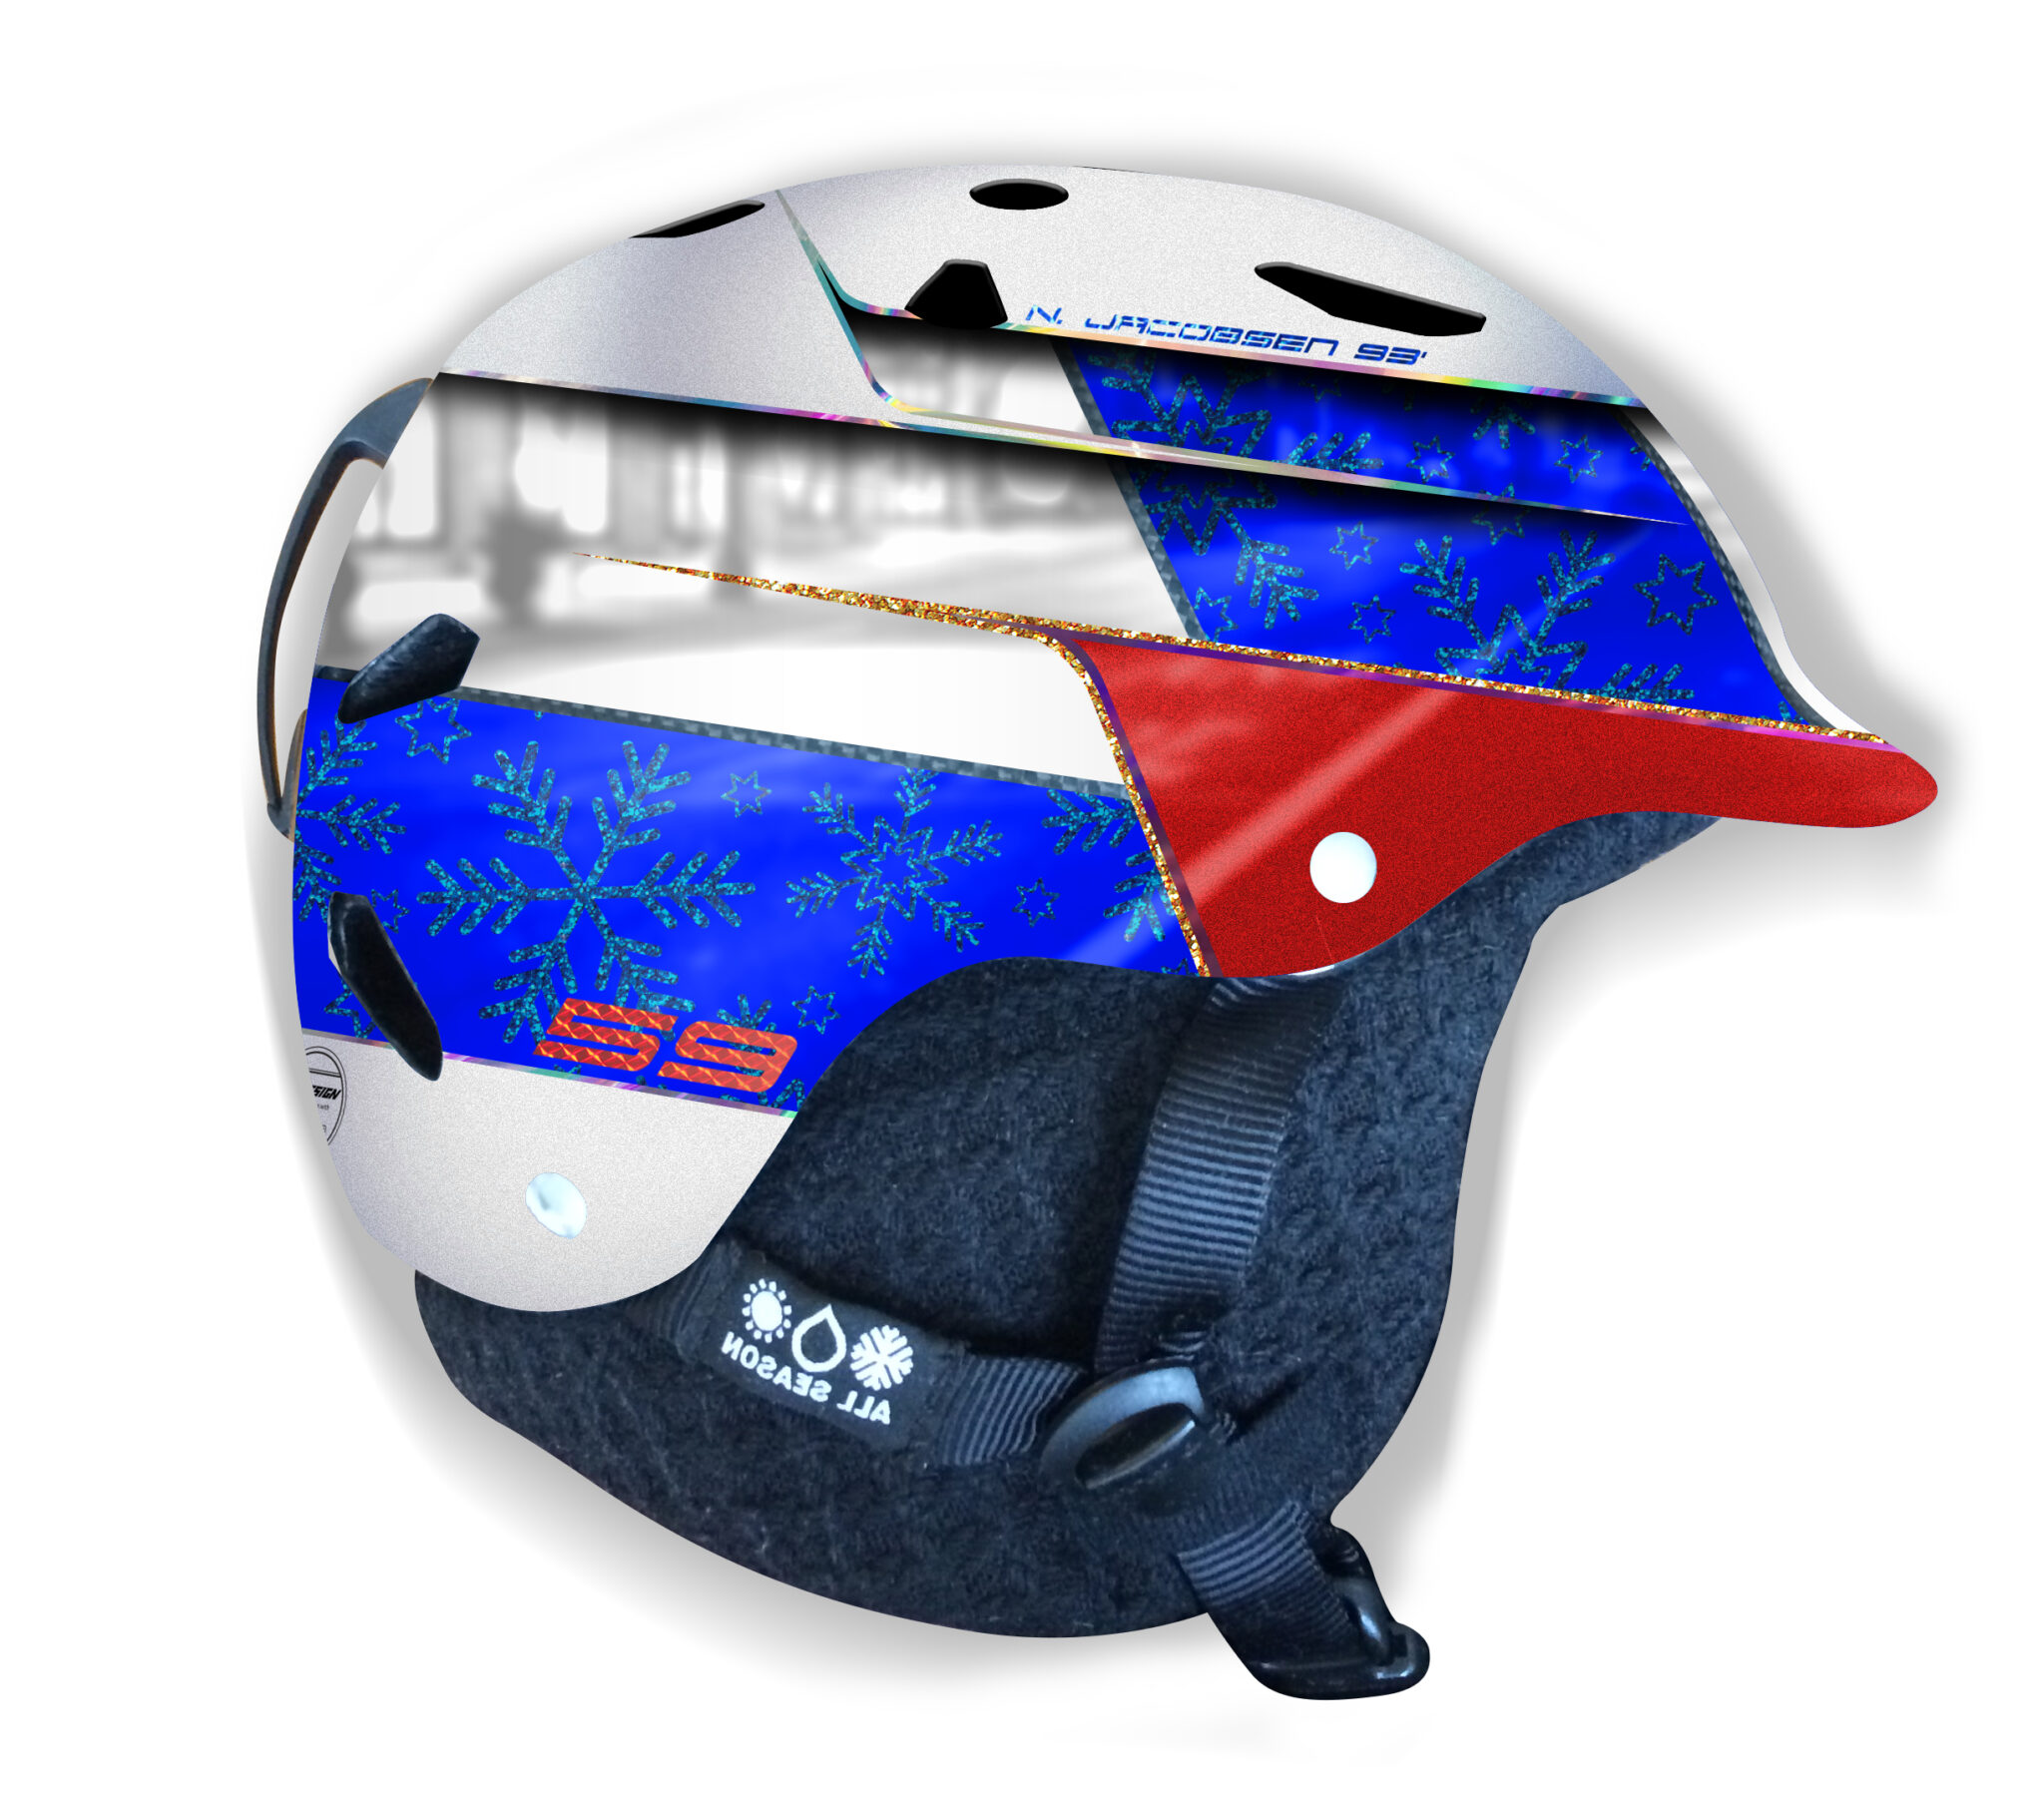 skiing helmet design